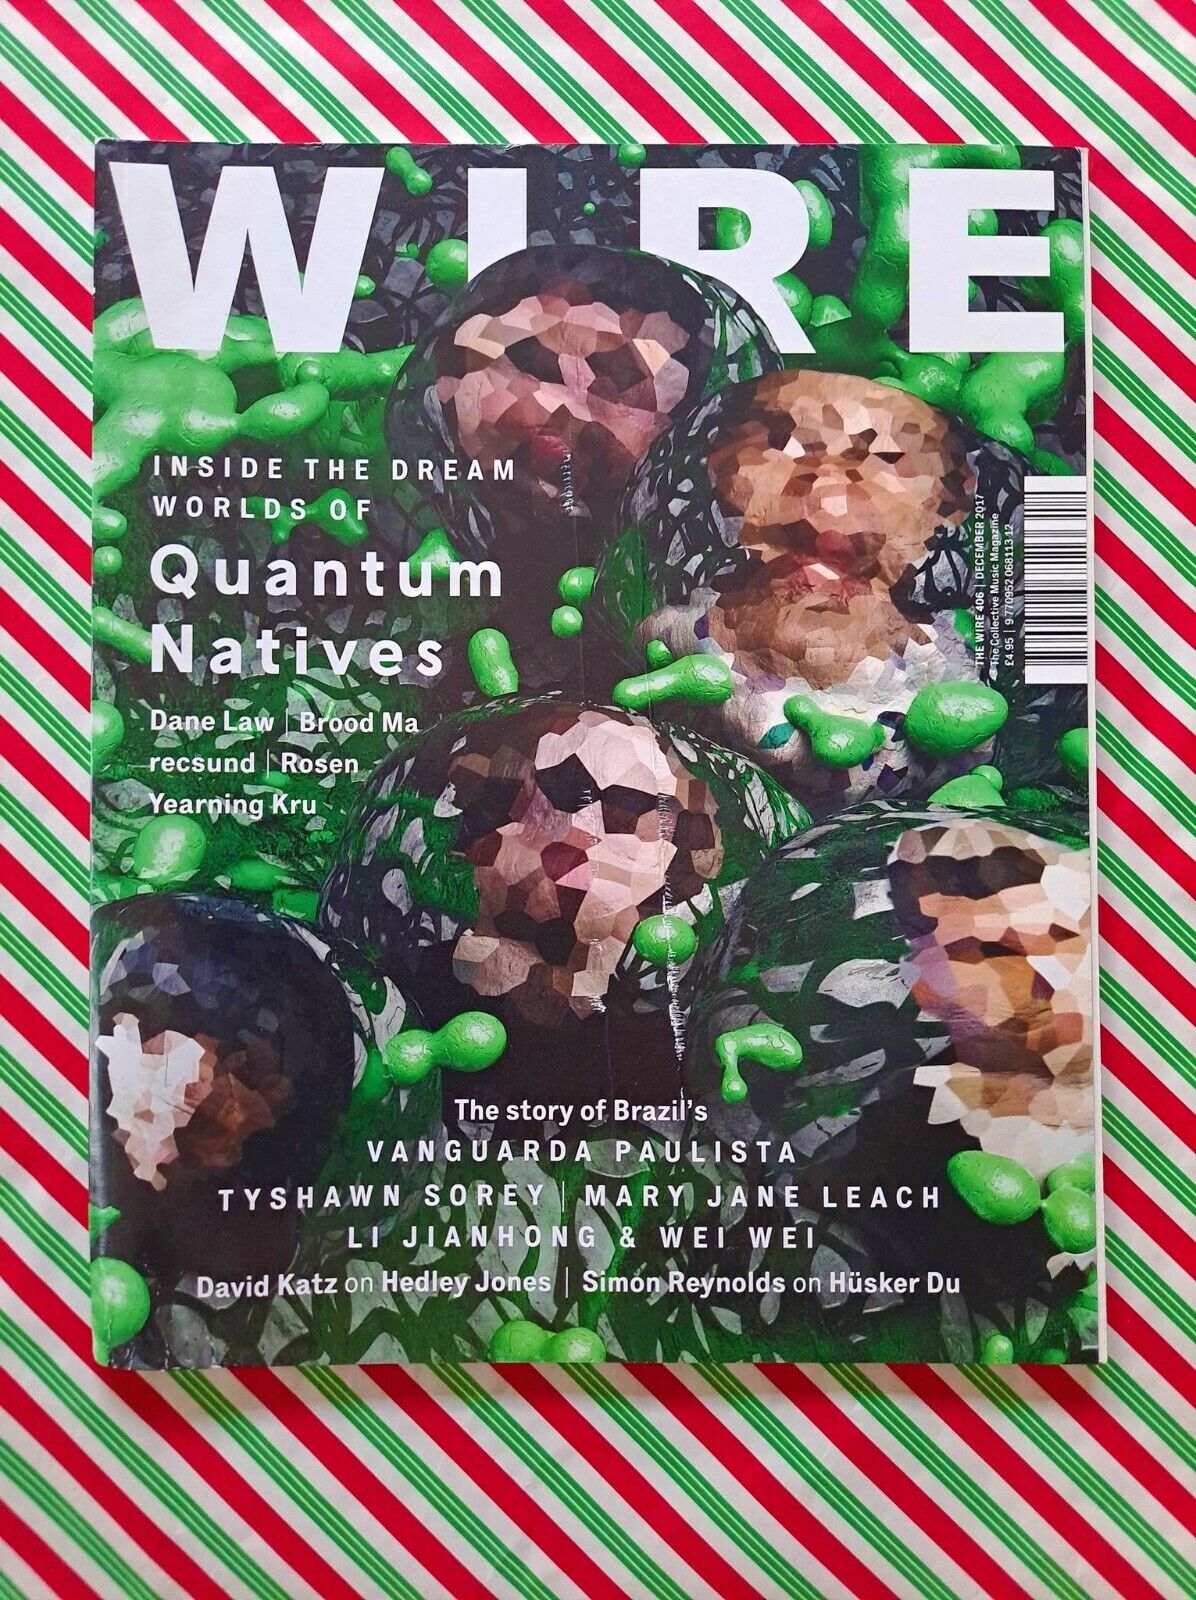 The Wire Magazine #406 - December 2017 - Quantum Natives, Vanguards Paulista